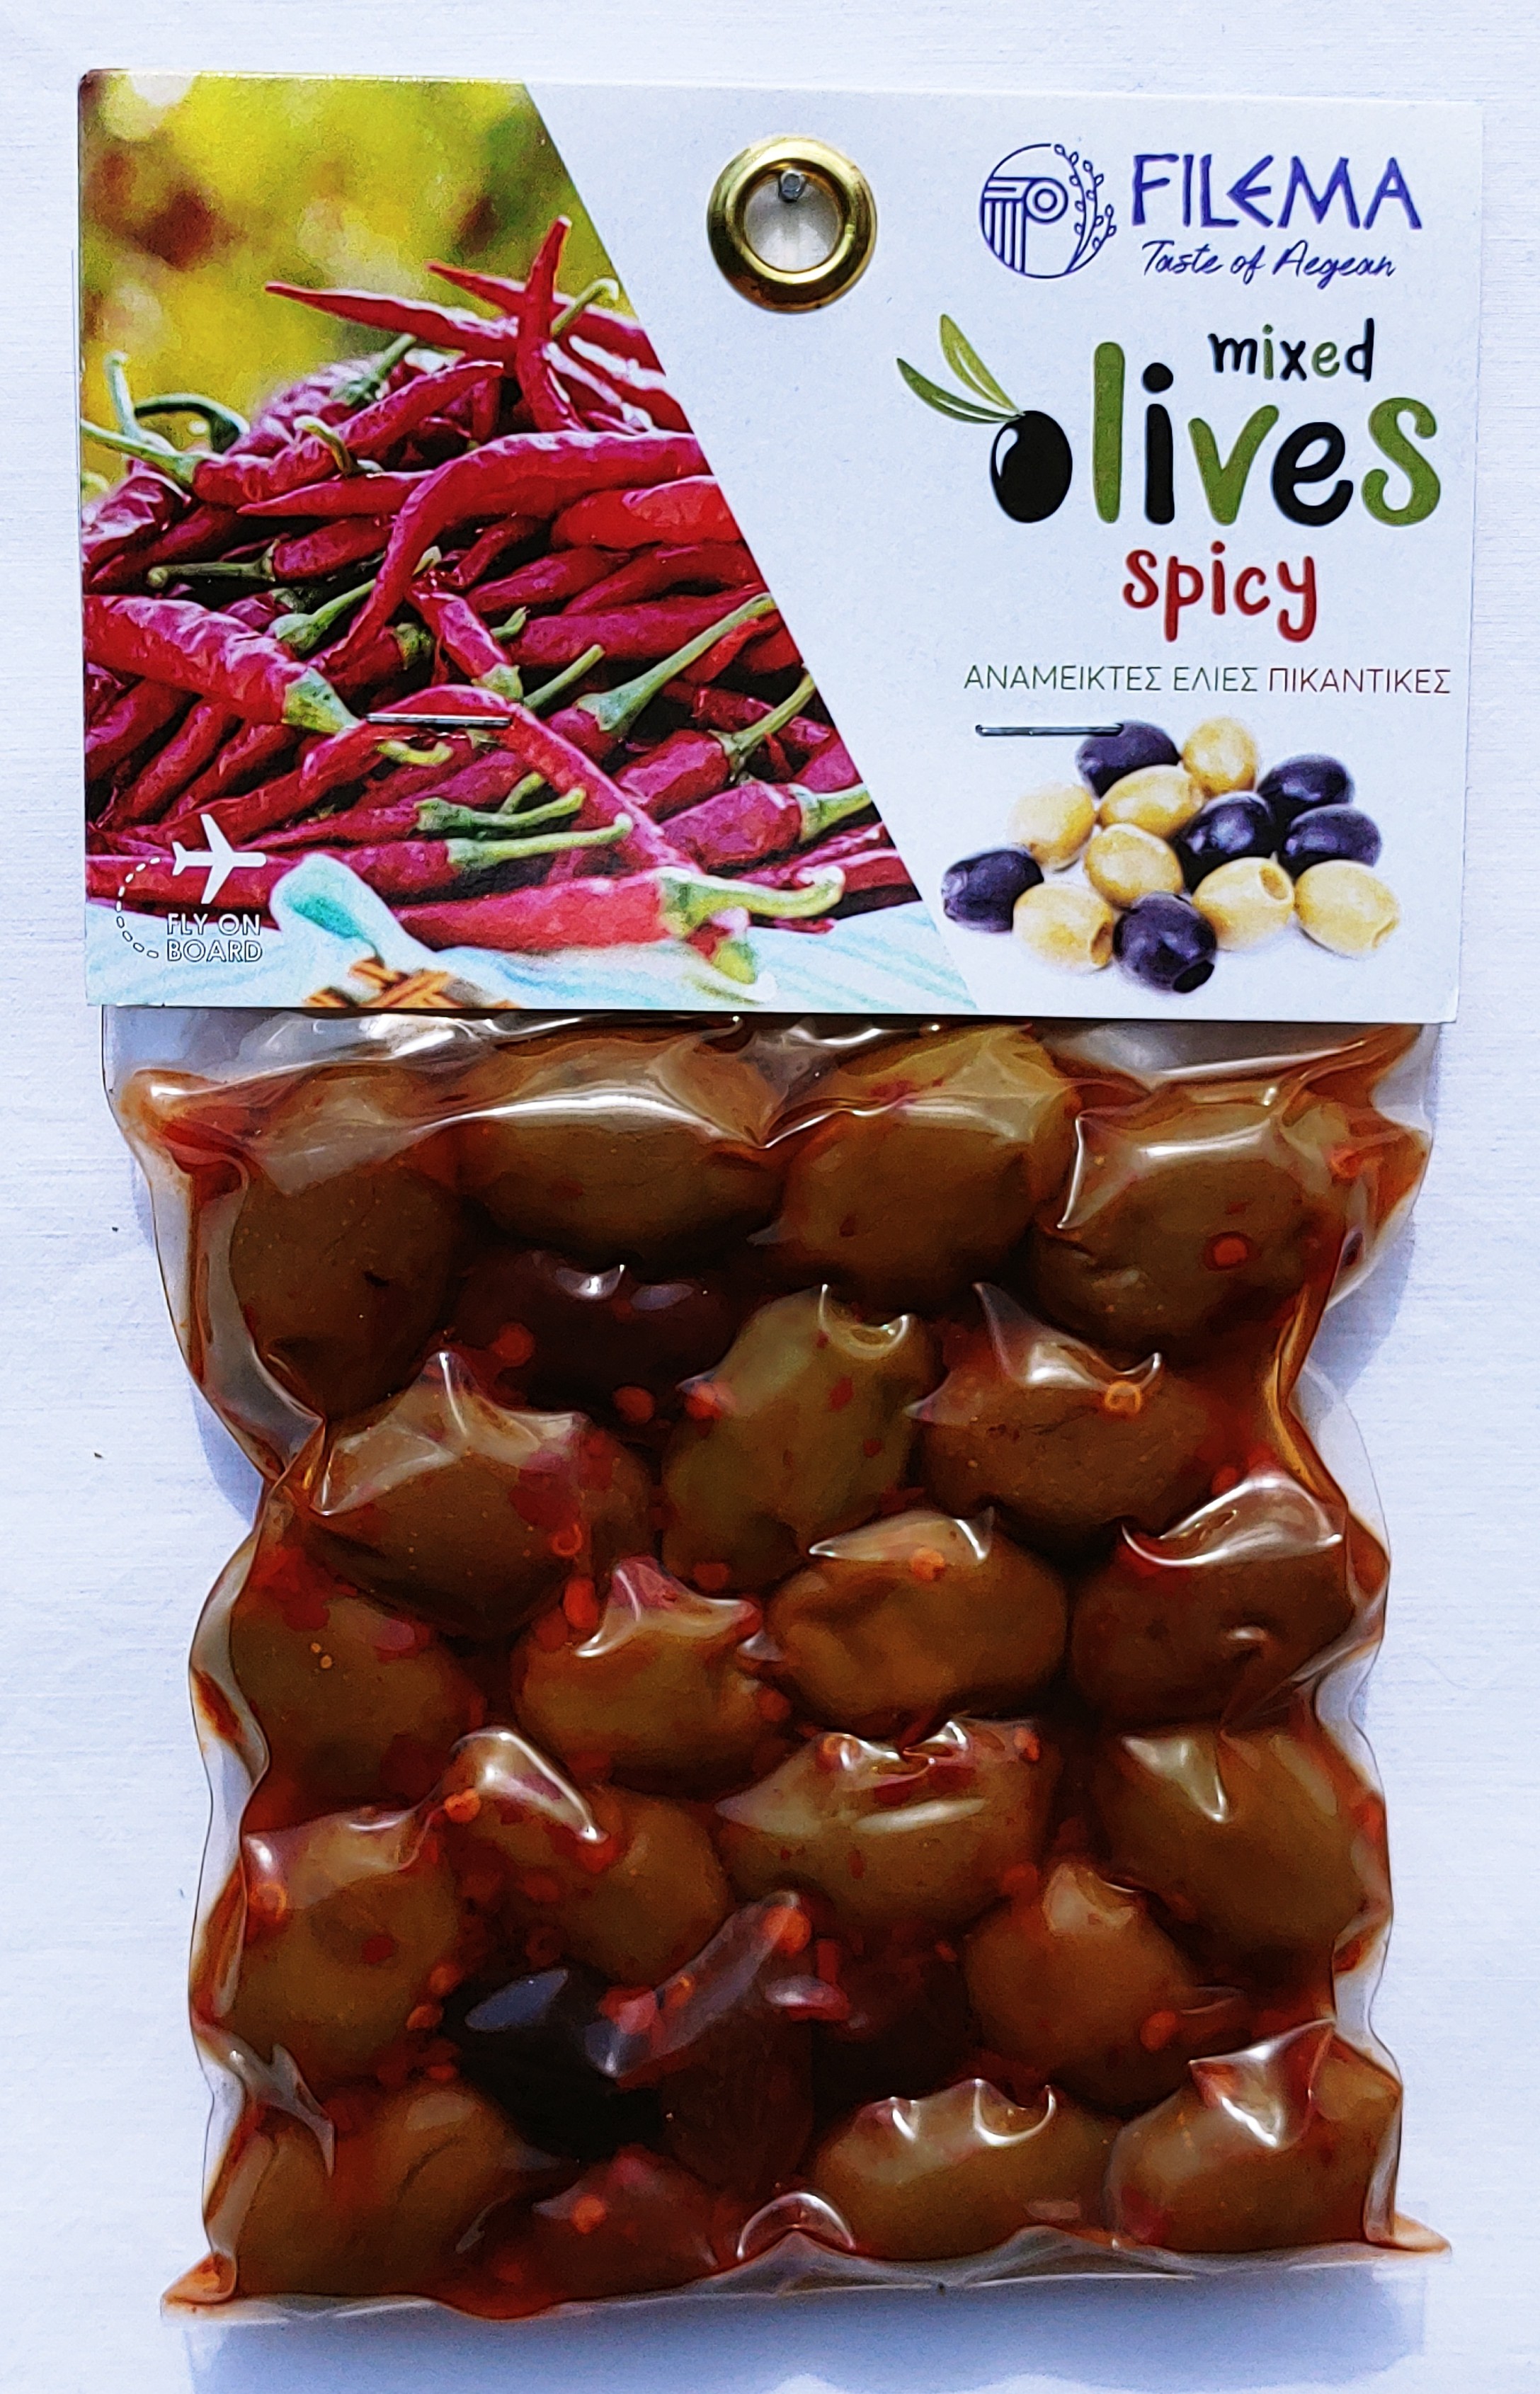 Míchané olivy pikantní